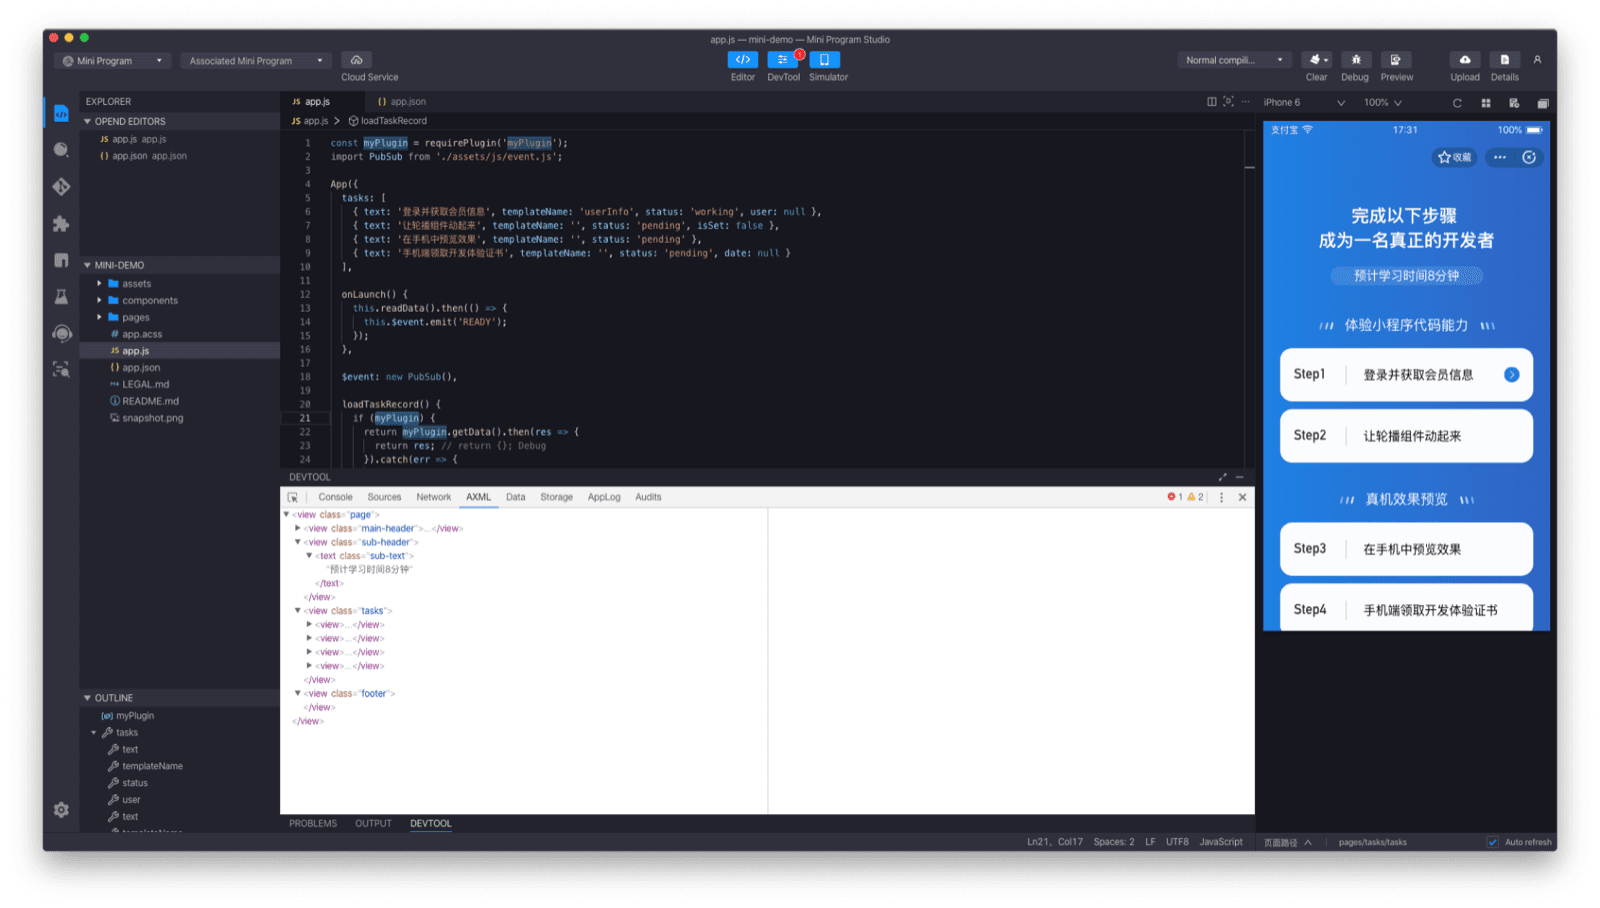 پنجره برنامه Alipay DevTools که ویرایشگر کد، شبیه ساز و دیباگر را نشان می دهد.